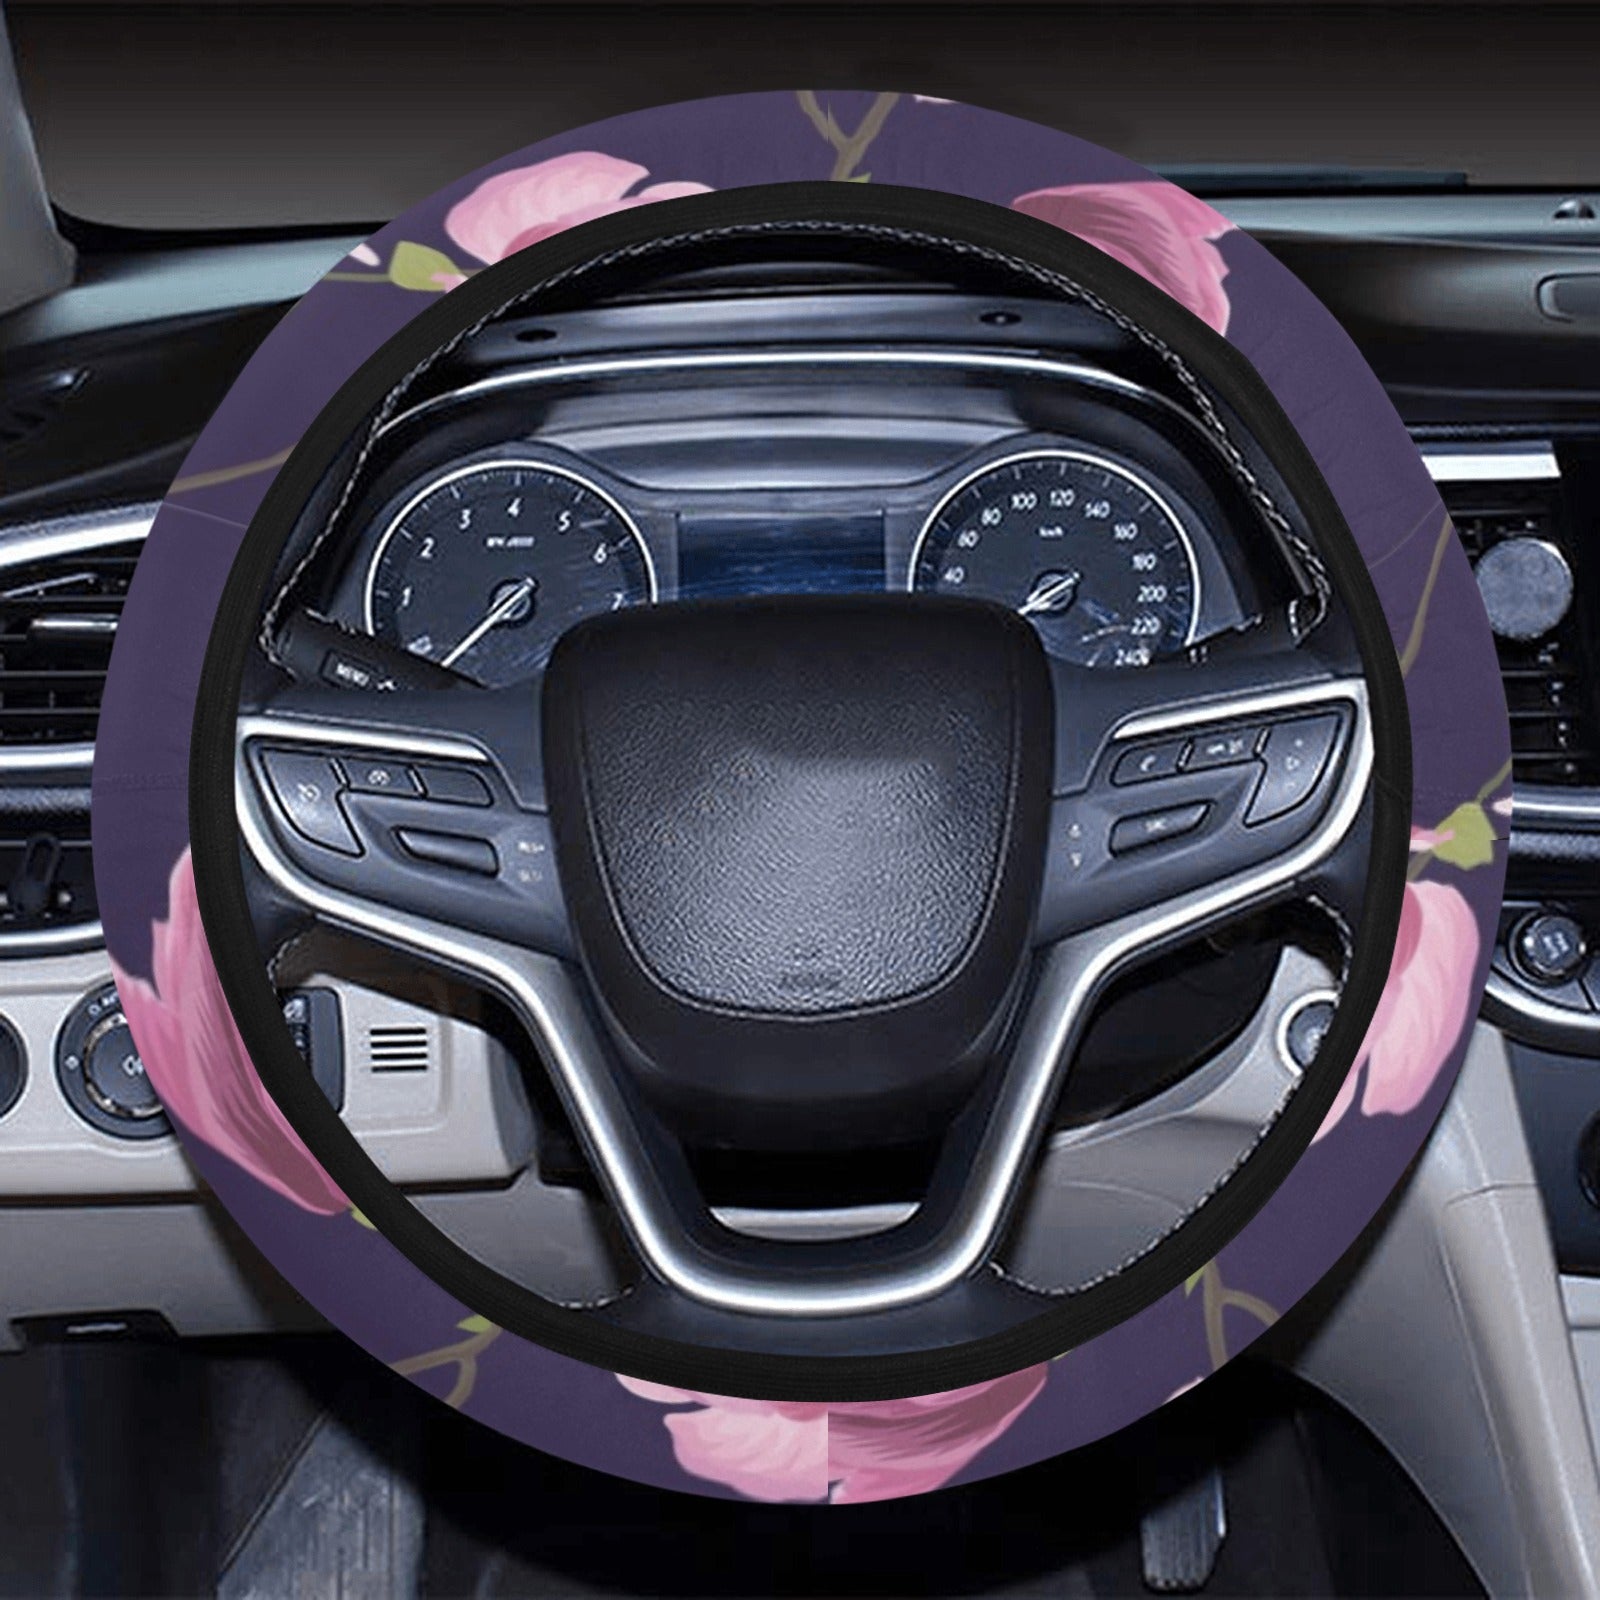 Purple Pink Flowers Steering Wheel Cover